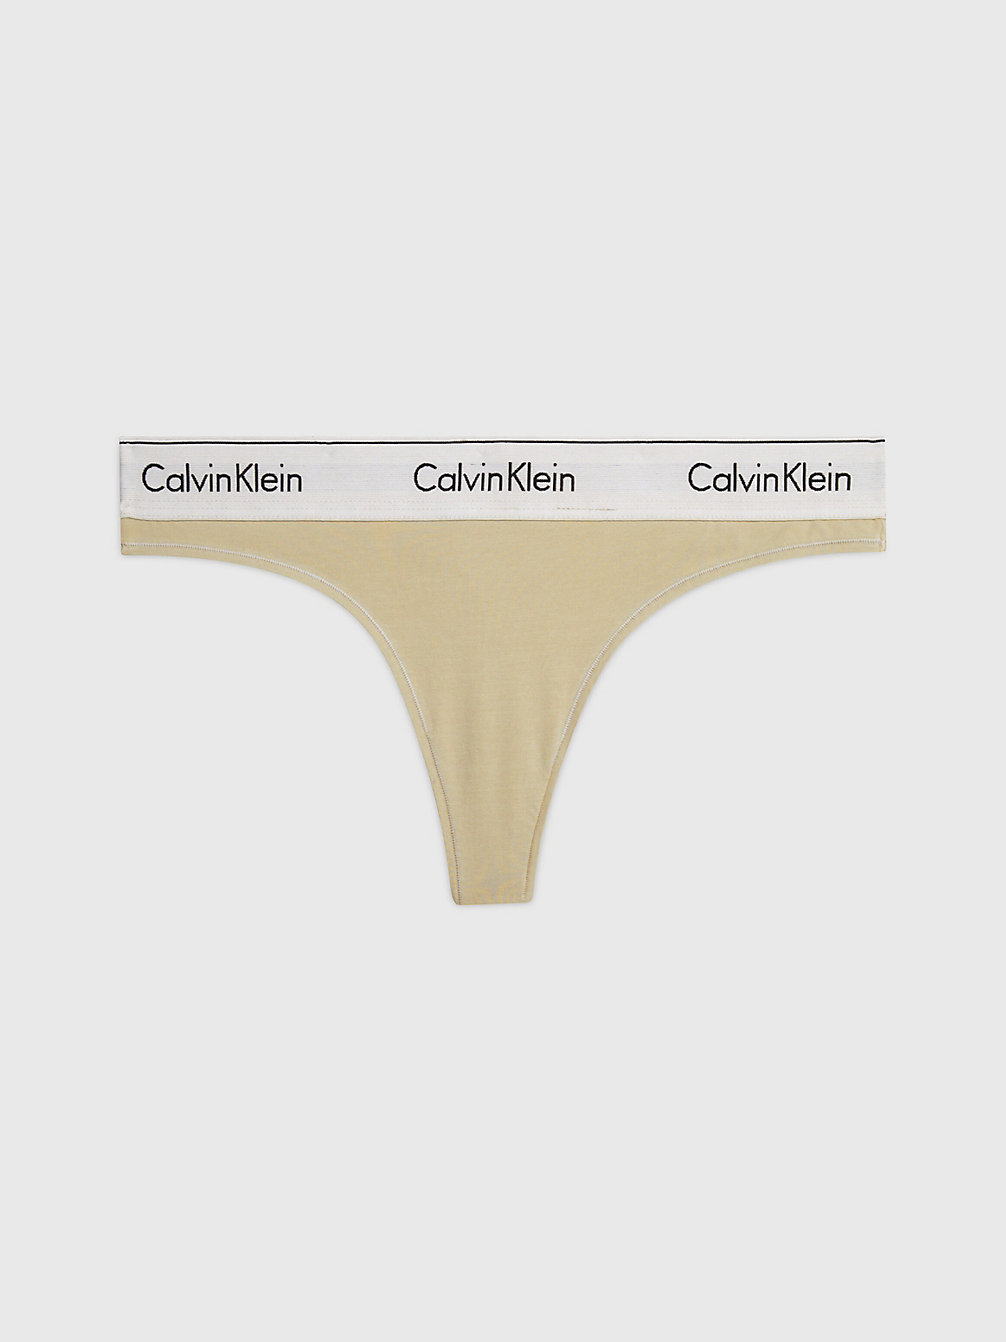 SHELL > String - Modern Cotton > undefined dames - Calvin Klein